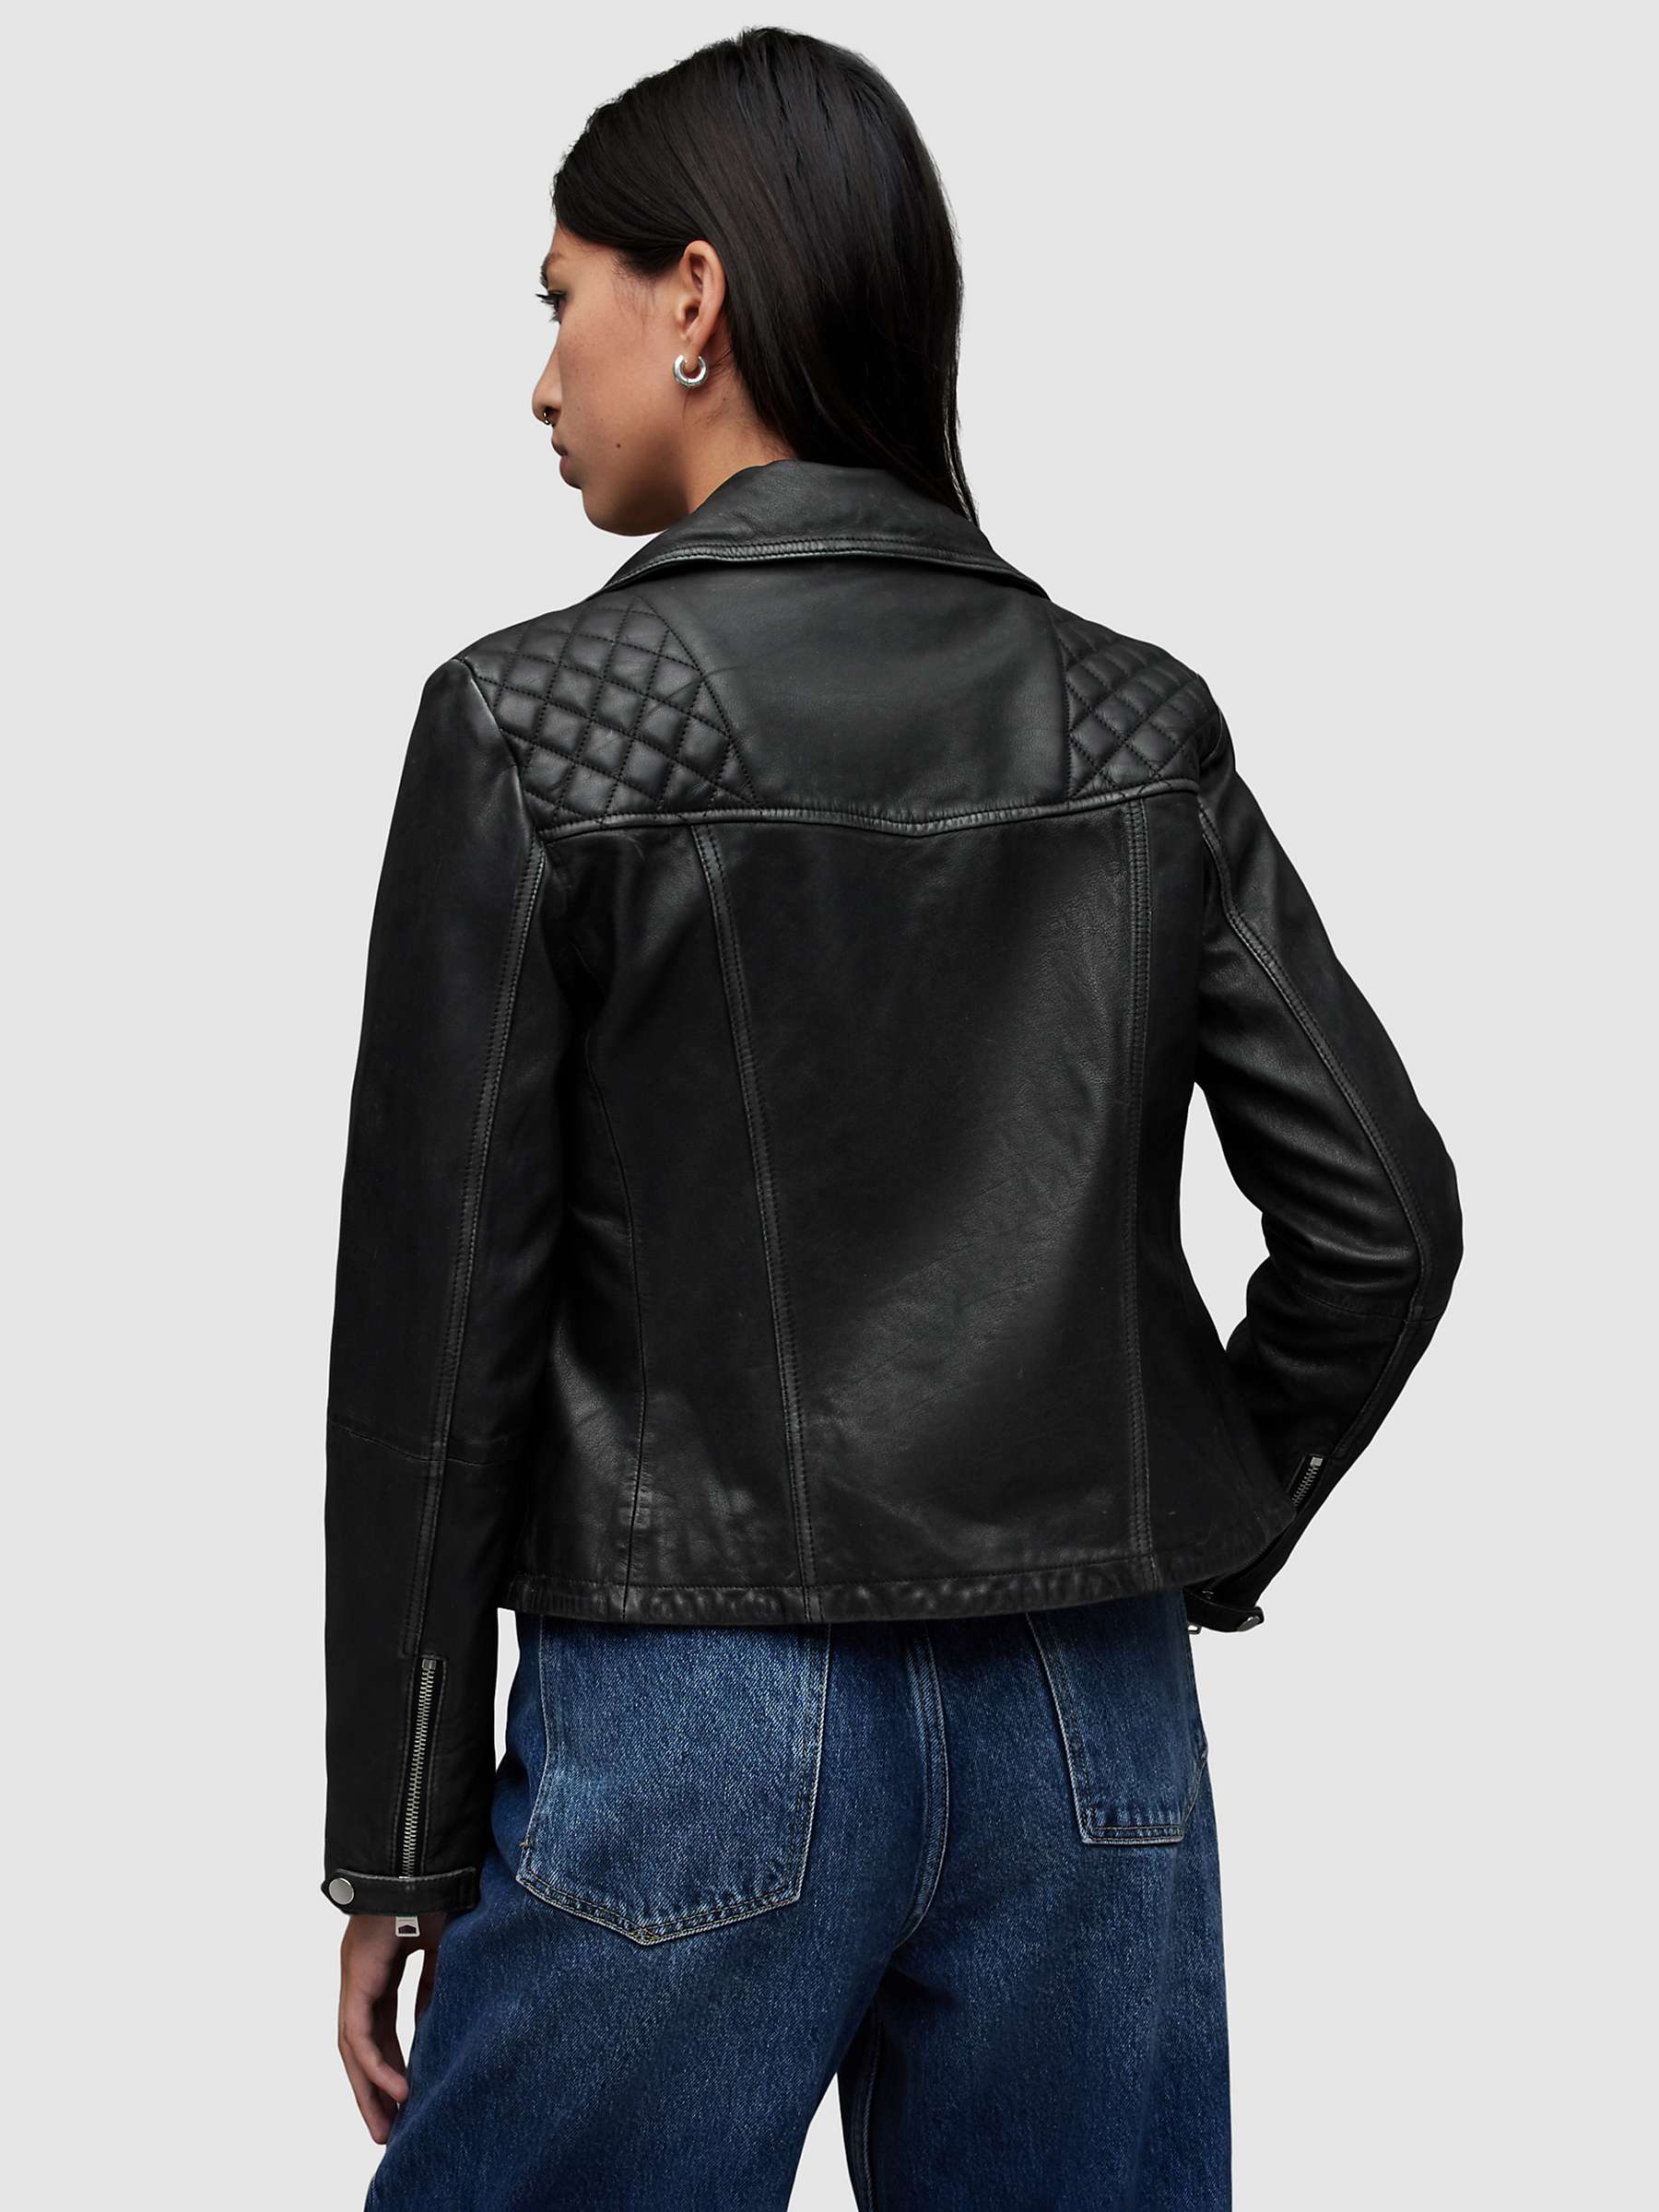 Buy AllSaints Cargo Leather Biker Jacket, Black Online at johnlewis.com